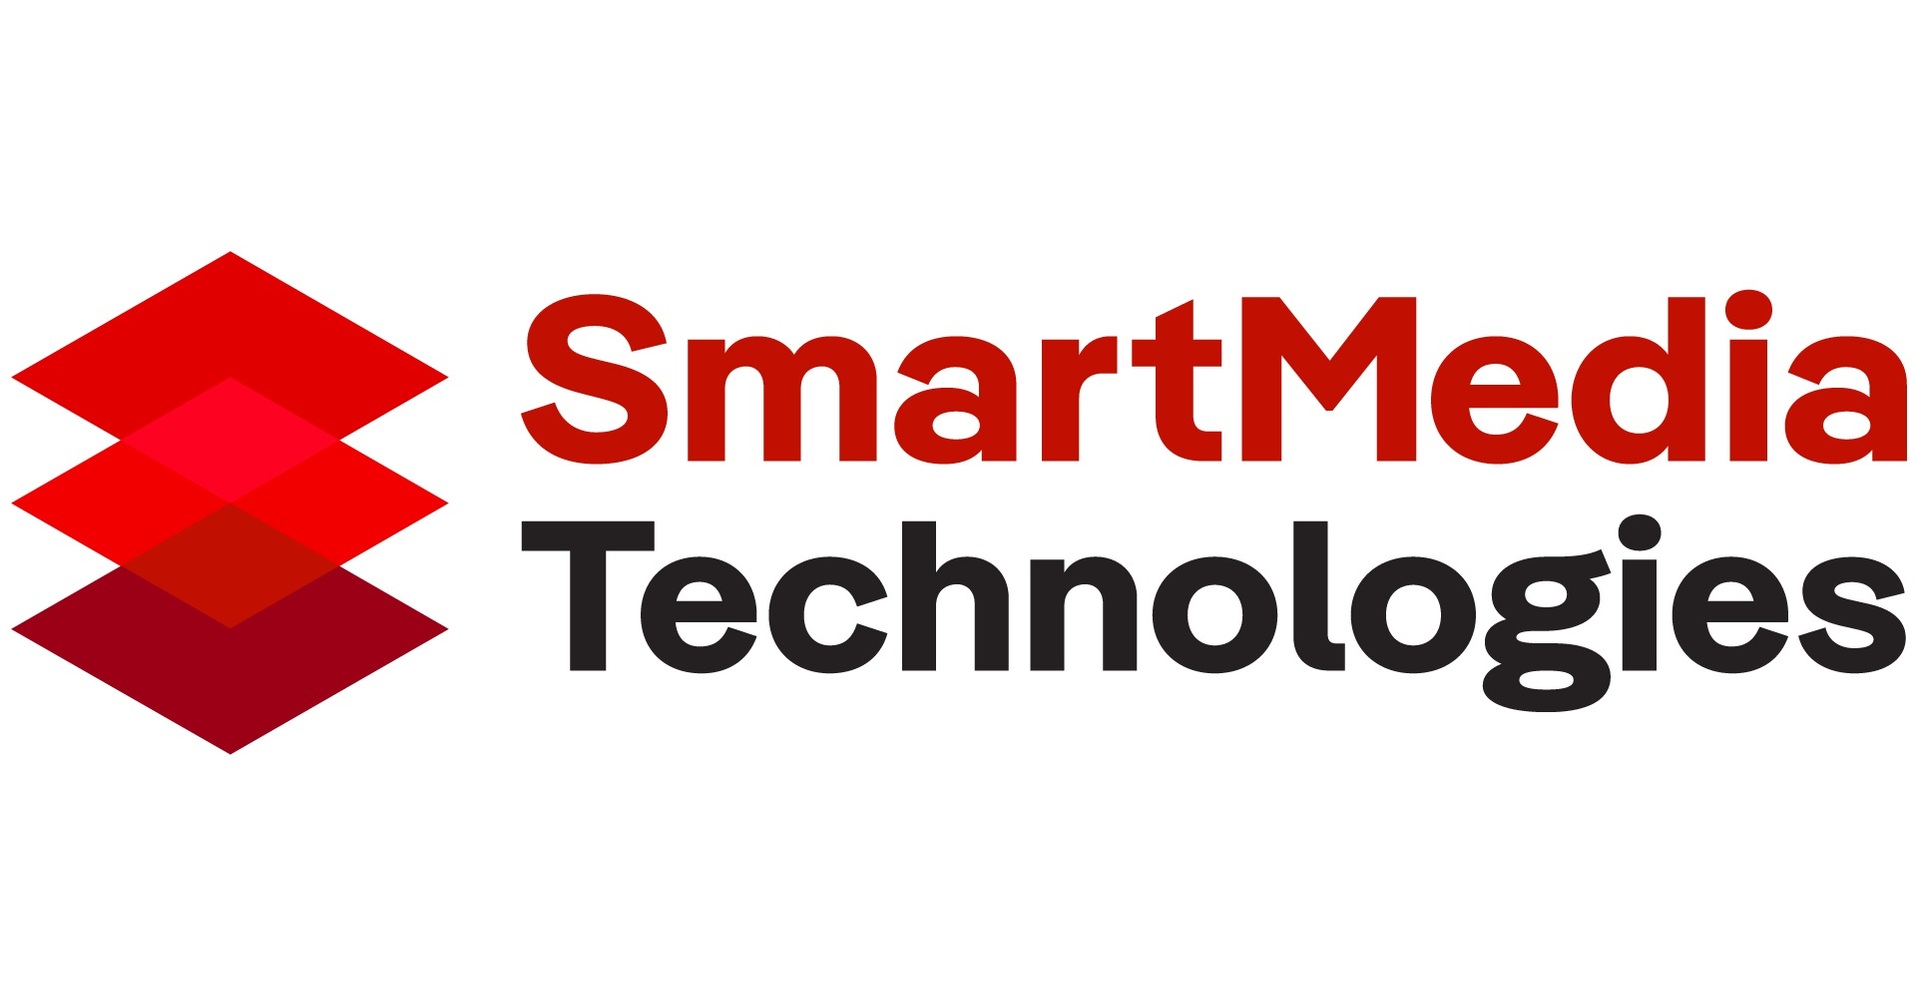 A SmartMedia Technologies anuncia o desenvolvimento de experiências tokenizadas imersivas com base na plataforma de desenvolvimento WebAR da Niantic para permitir a propriedade Web3 em Realidade Aumentada (AR).